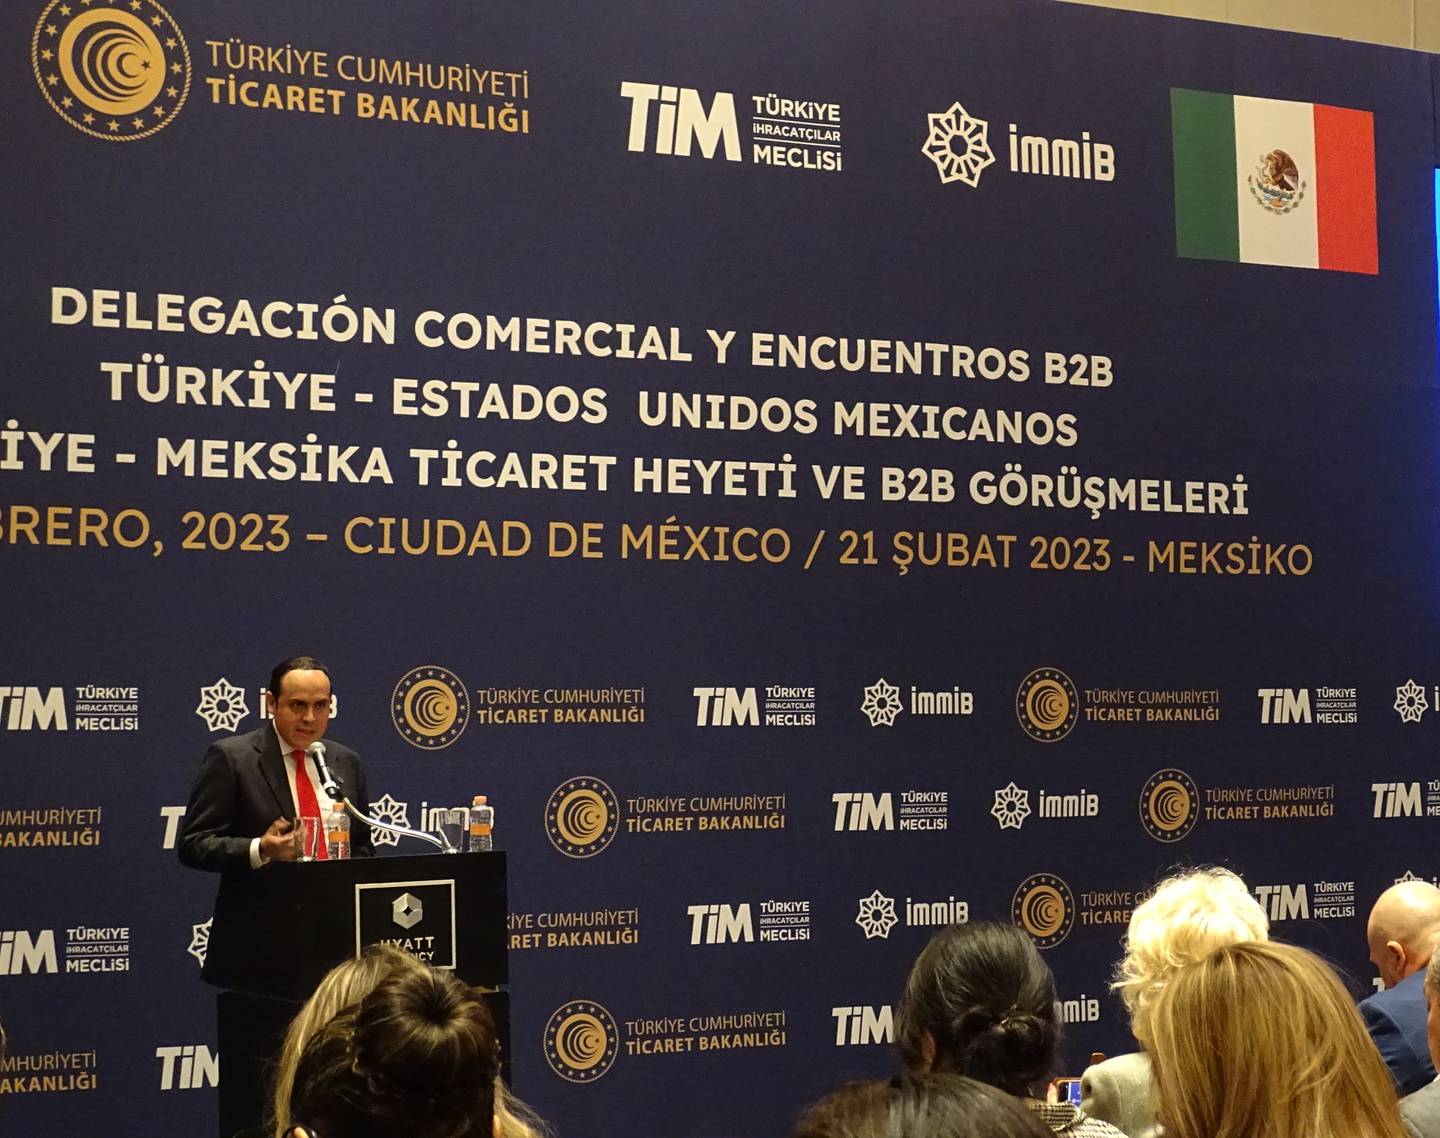 Delegación Comercial y Encuentros B2B  Türkiye - Estados Unidos Mexicanos